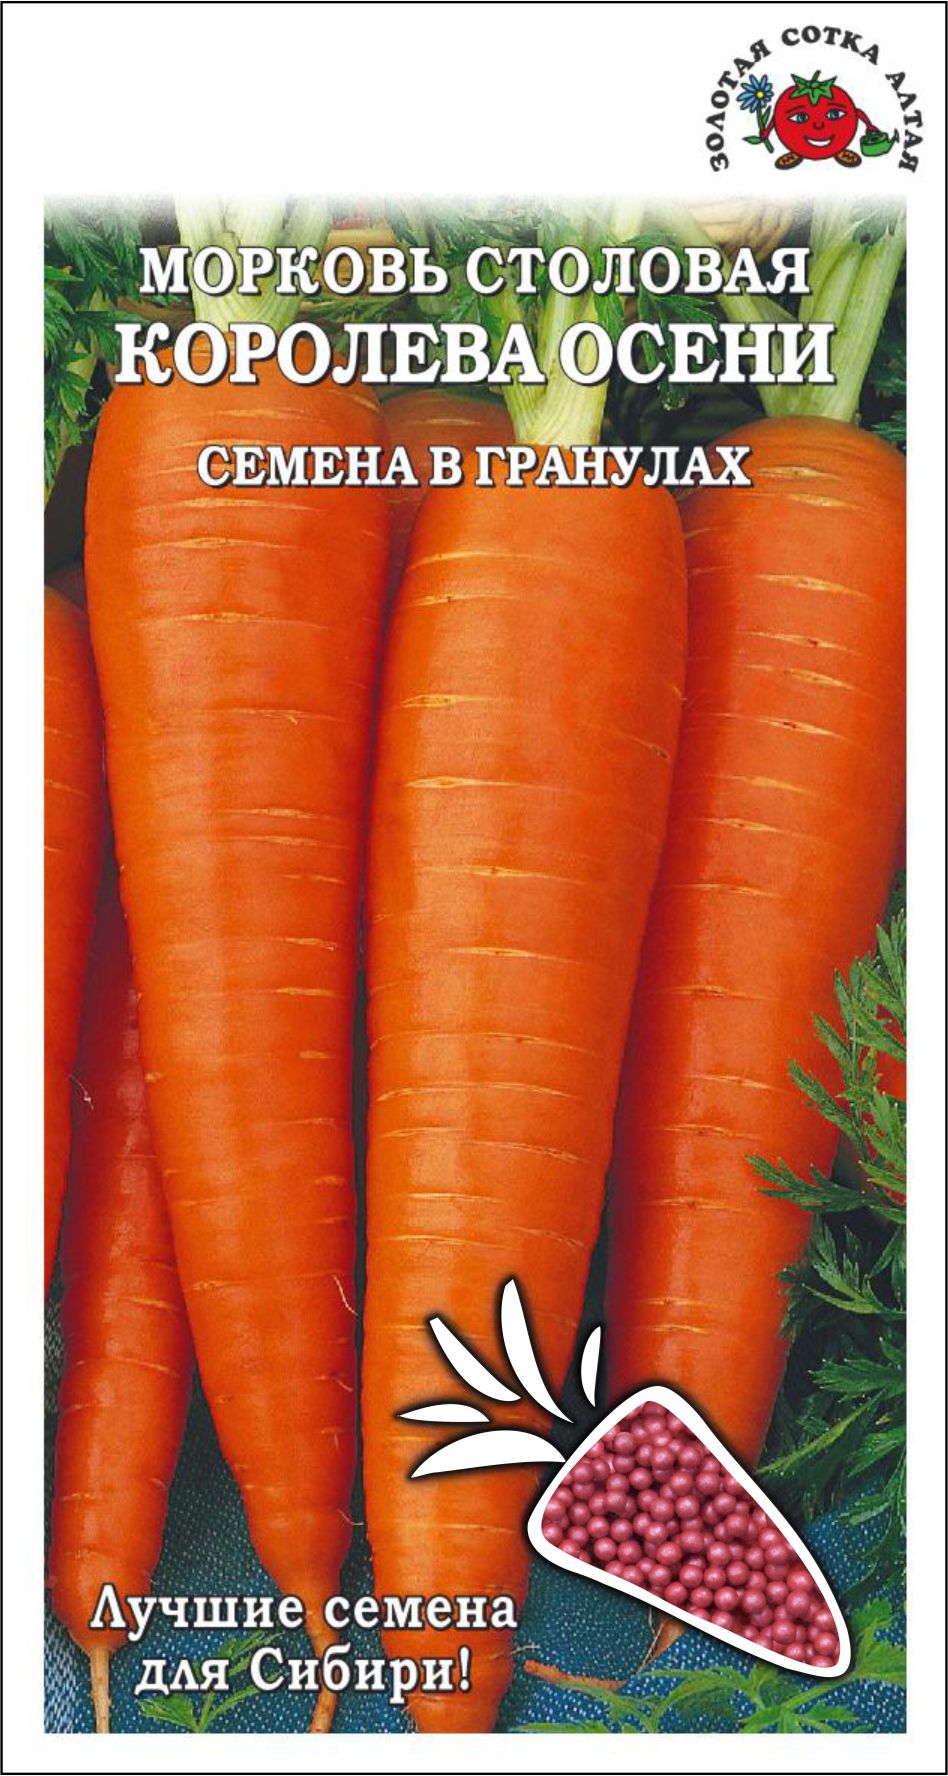 Морковь Королева осени (гранулы) /Сотка / 300шт/ позднесп. конусов. до 25см/*500